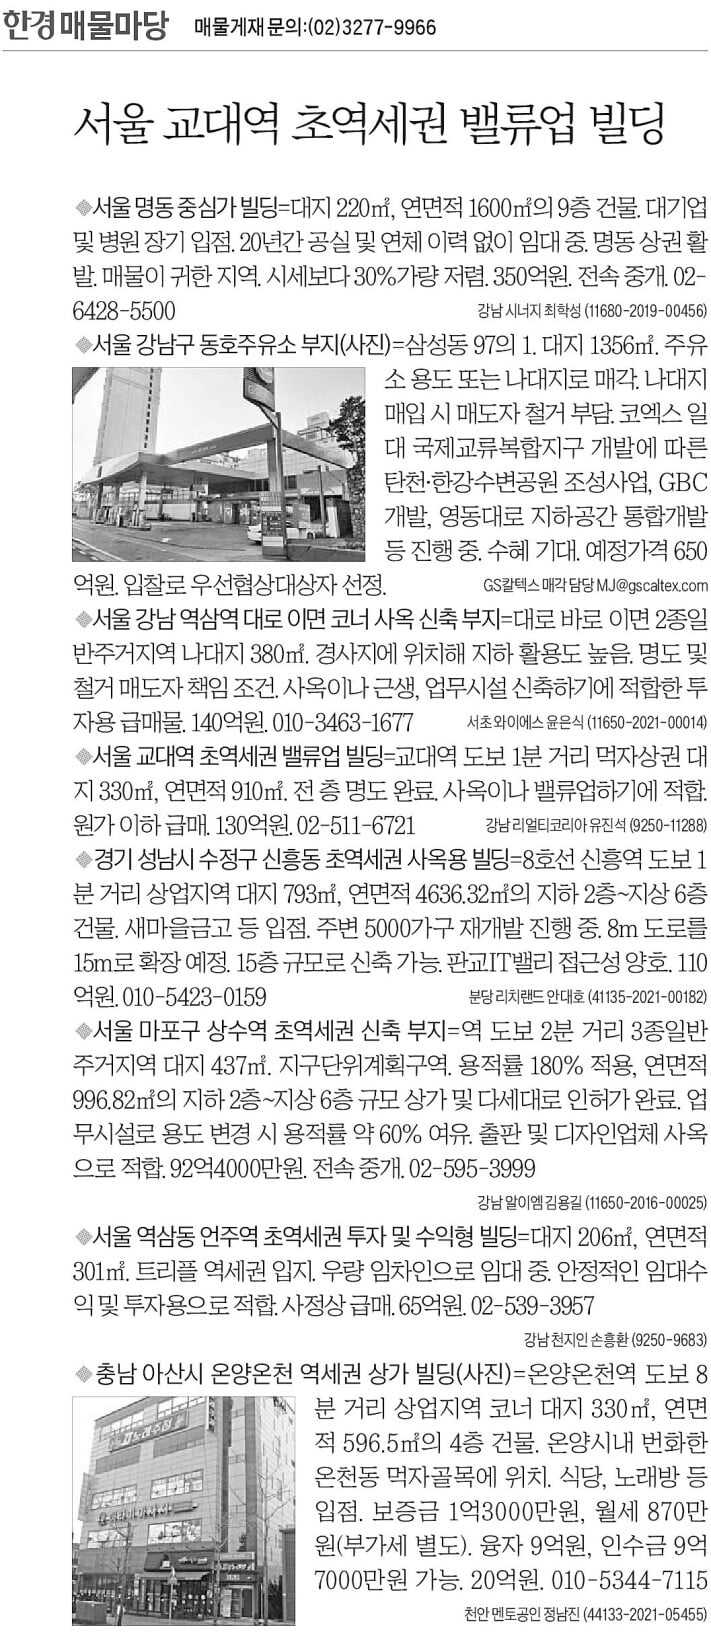 [한경 매물마당] 서울 교대역 초역세권 밸류업 빌딩 등 8건